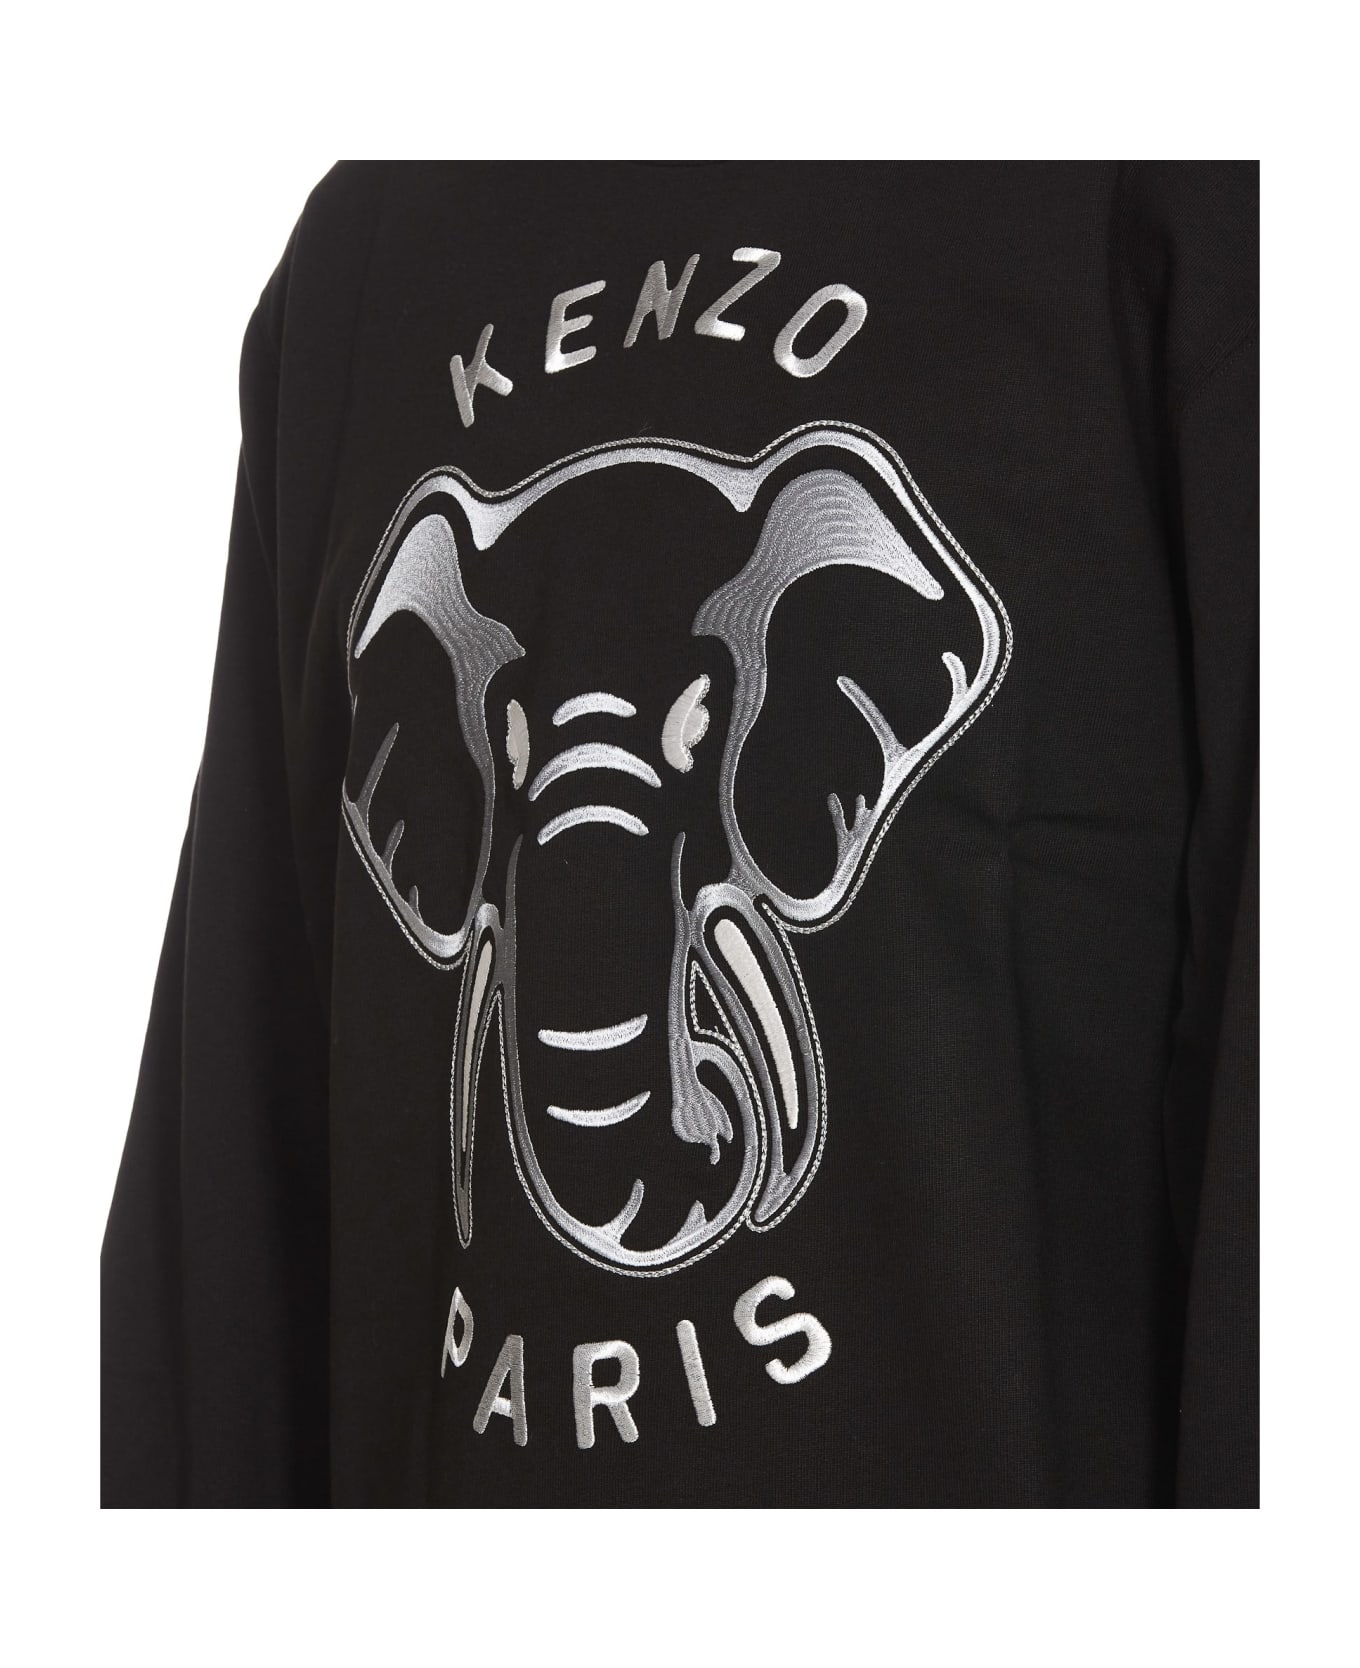 Kenzo Elephant Sweatshirt - Black フリース